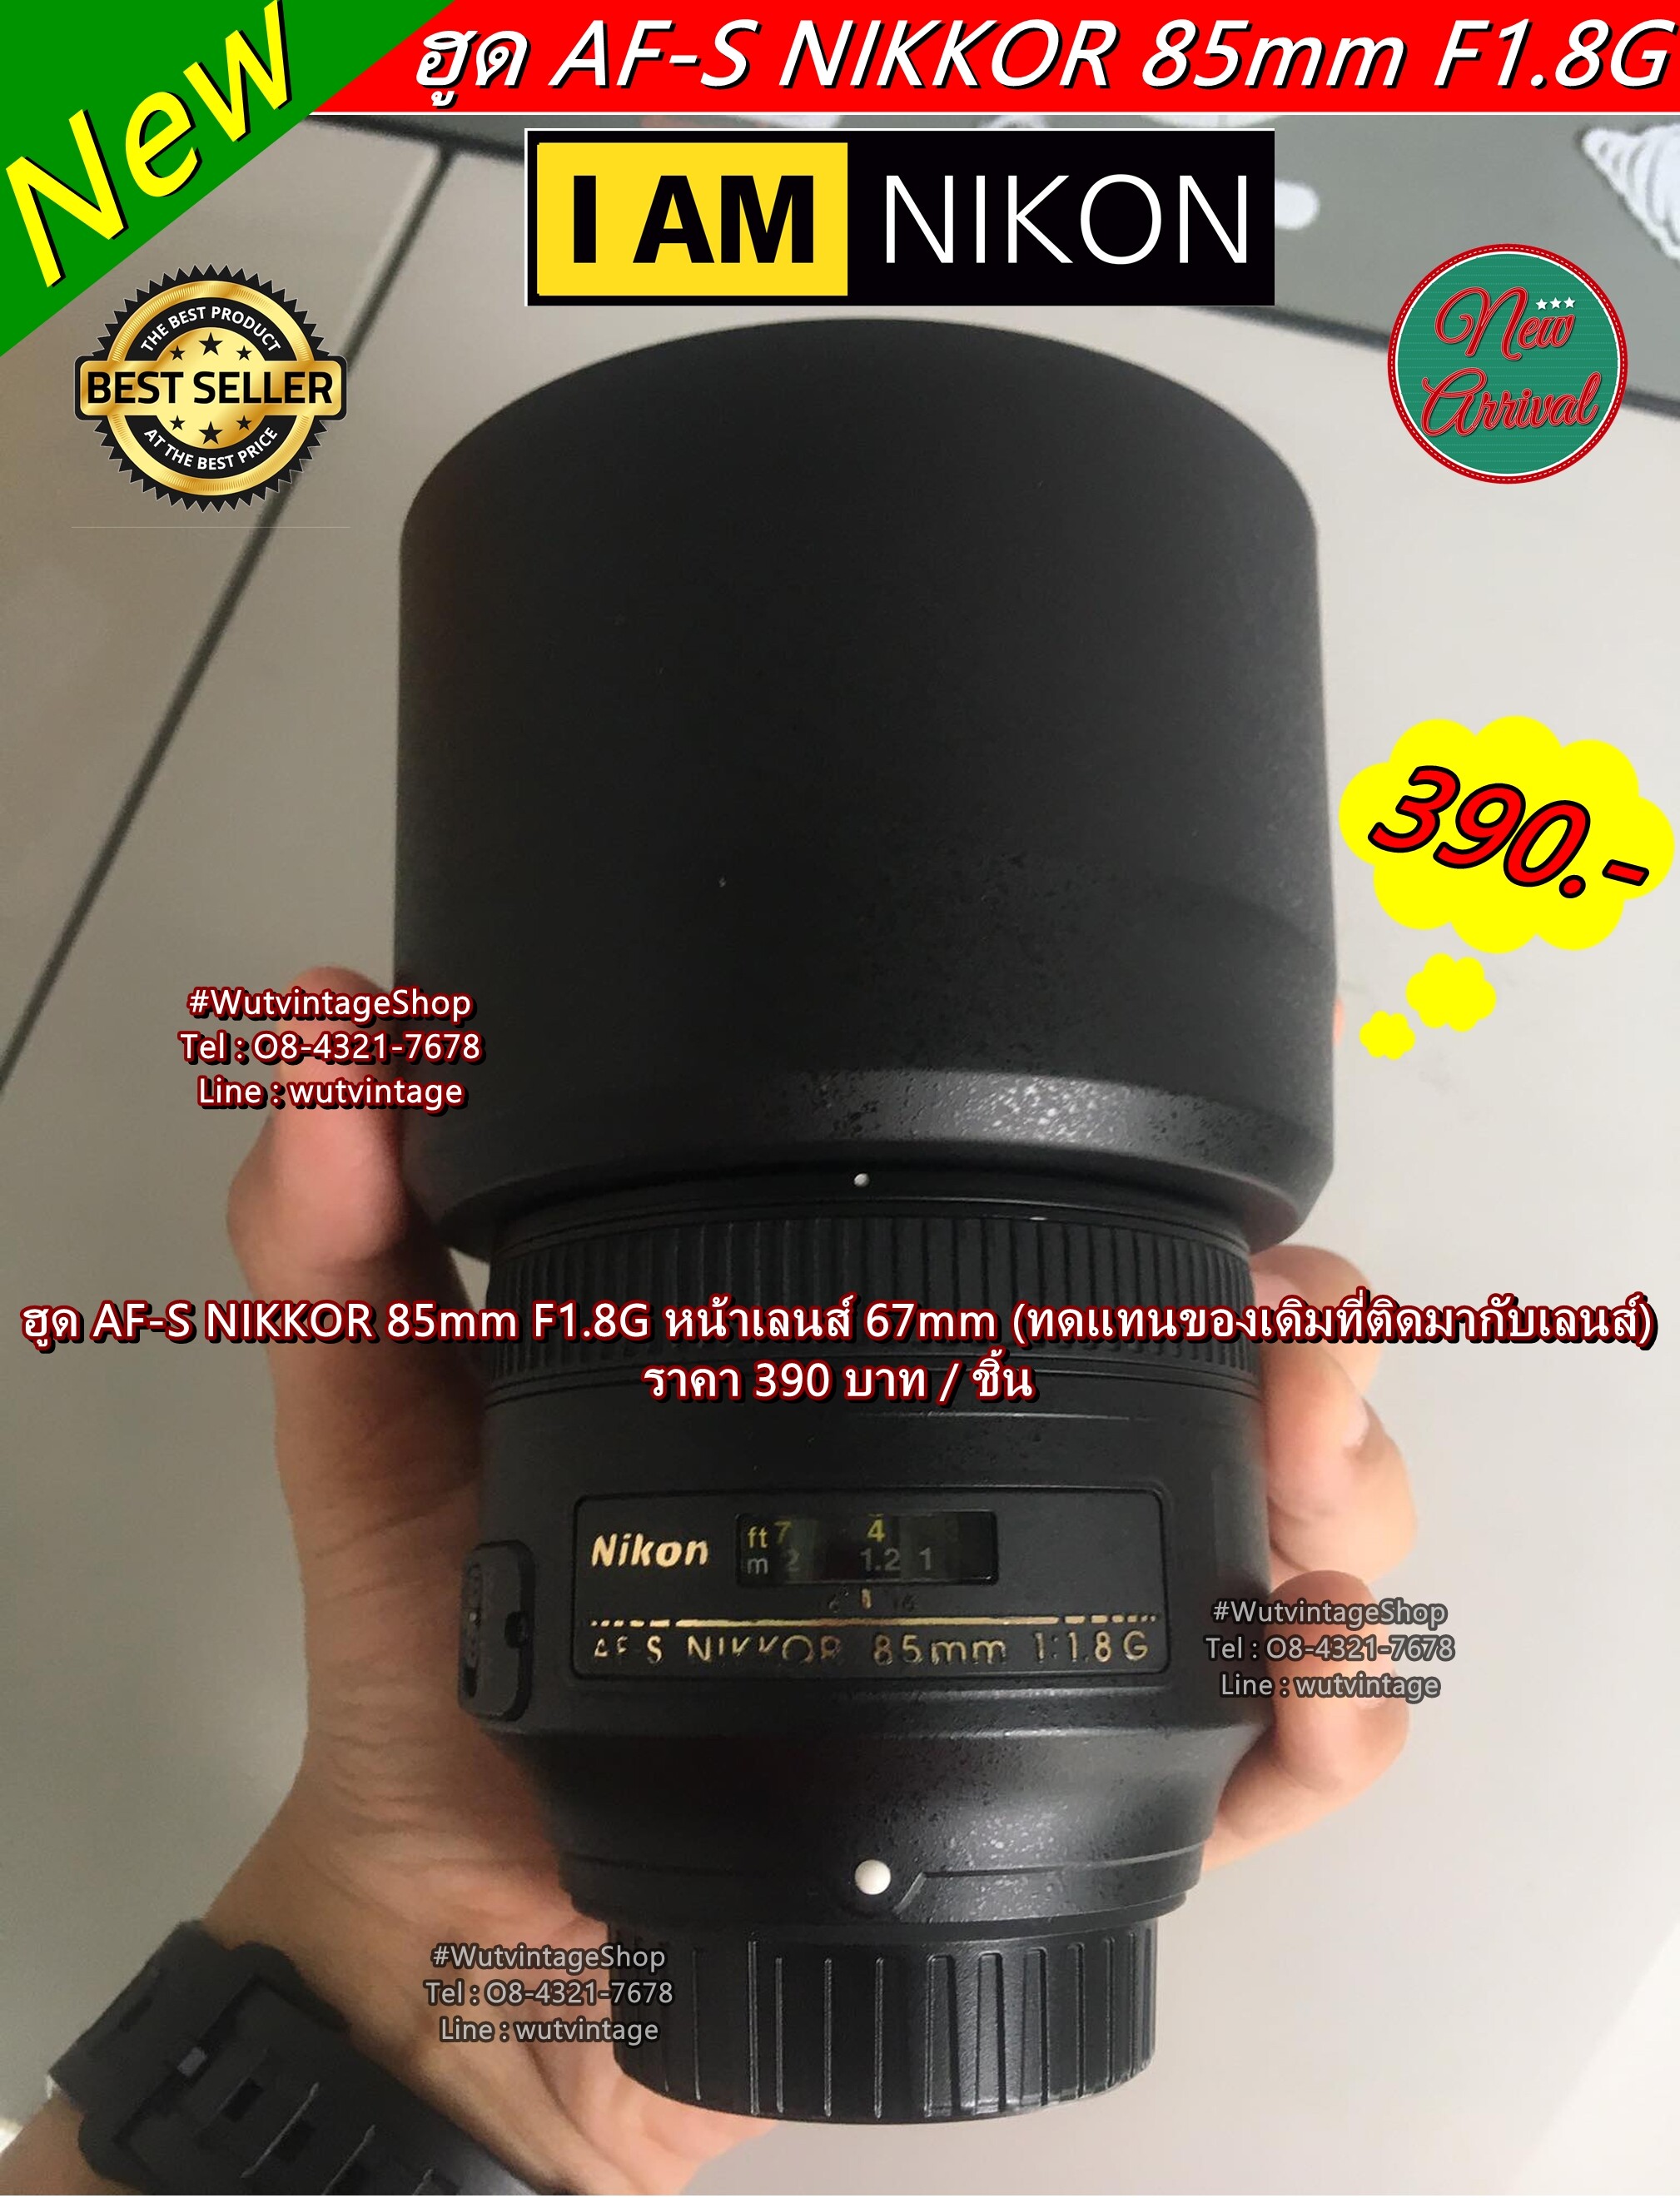 Nikon 85 1.8s ราคาถูก ซื้อออนไลน์ที่ - ก.ย. 2022 | Lazada.co.th